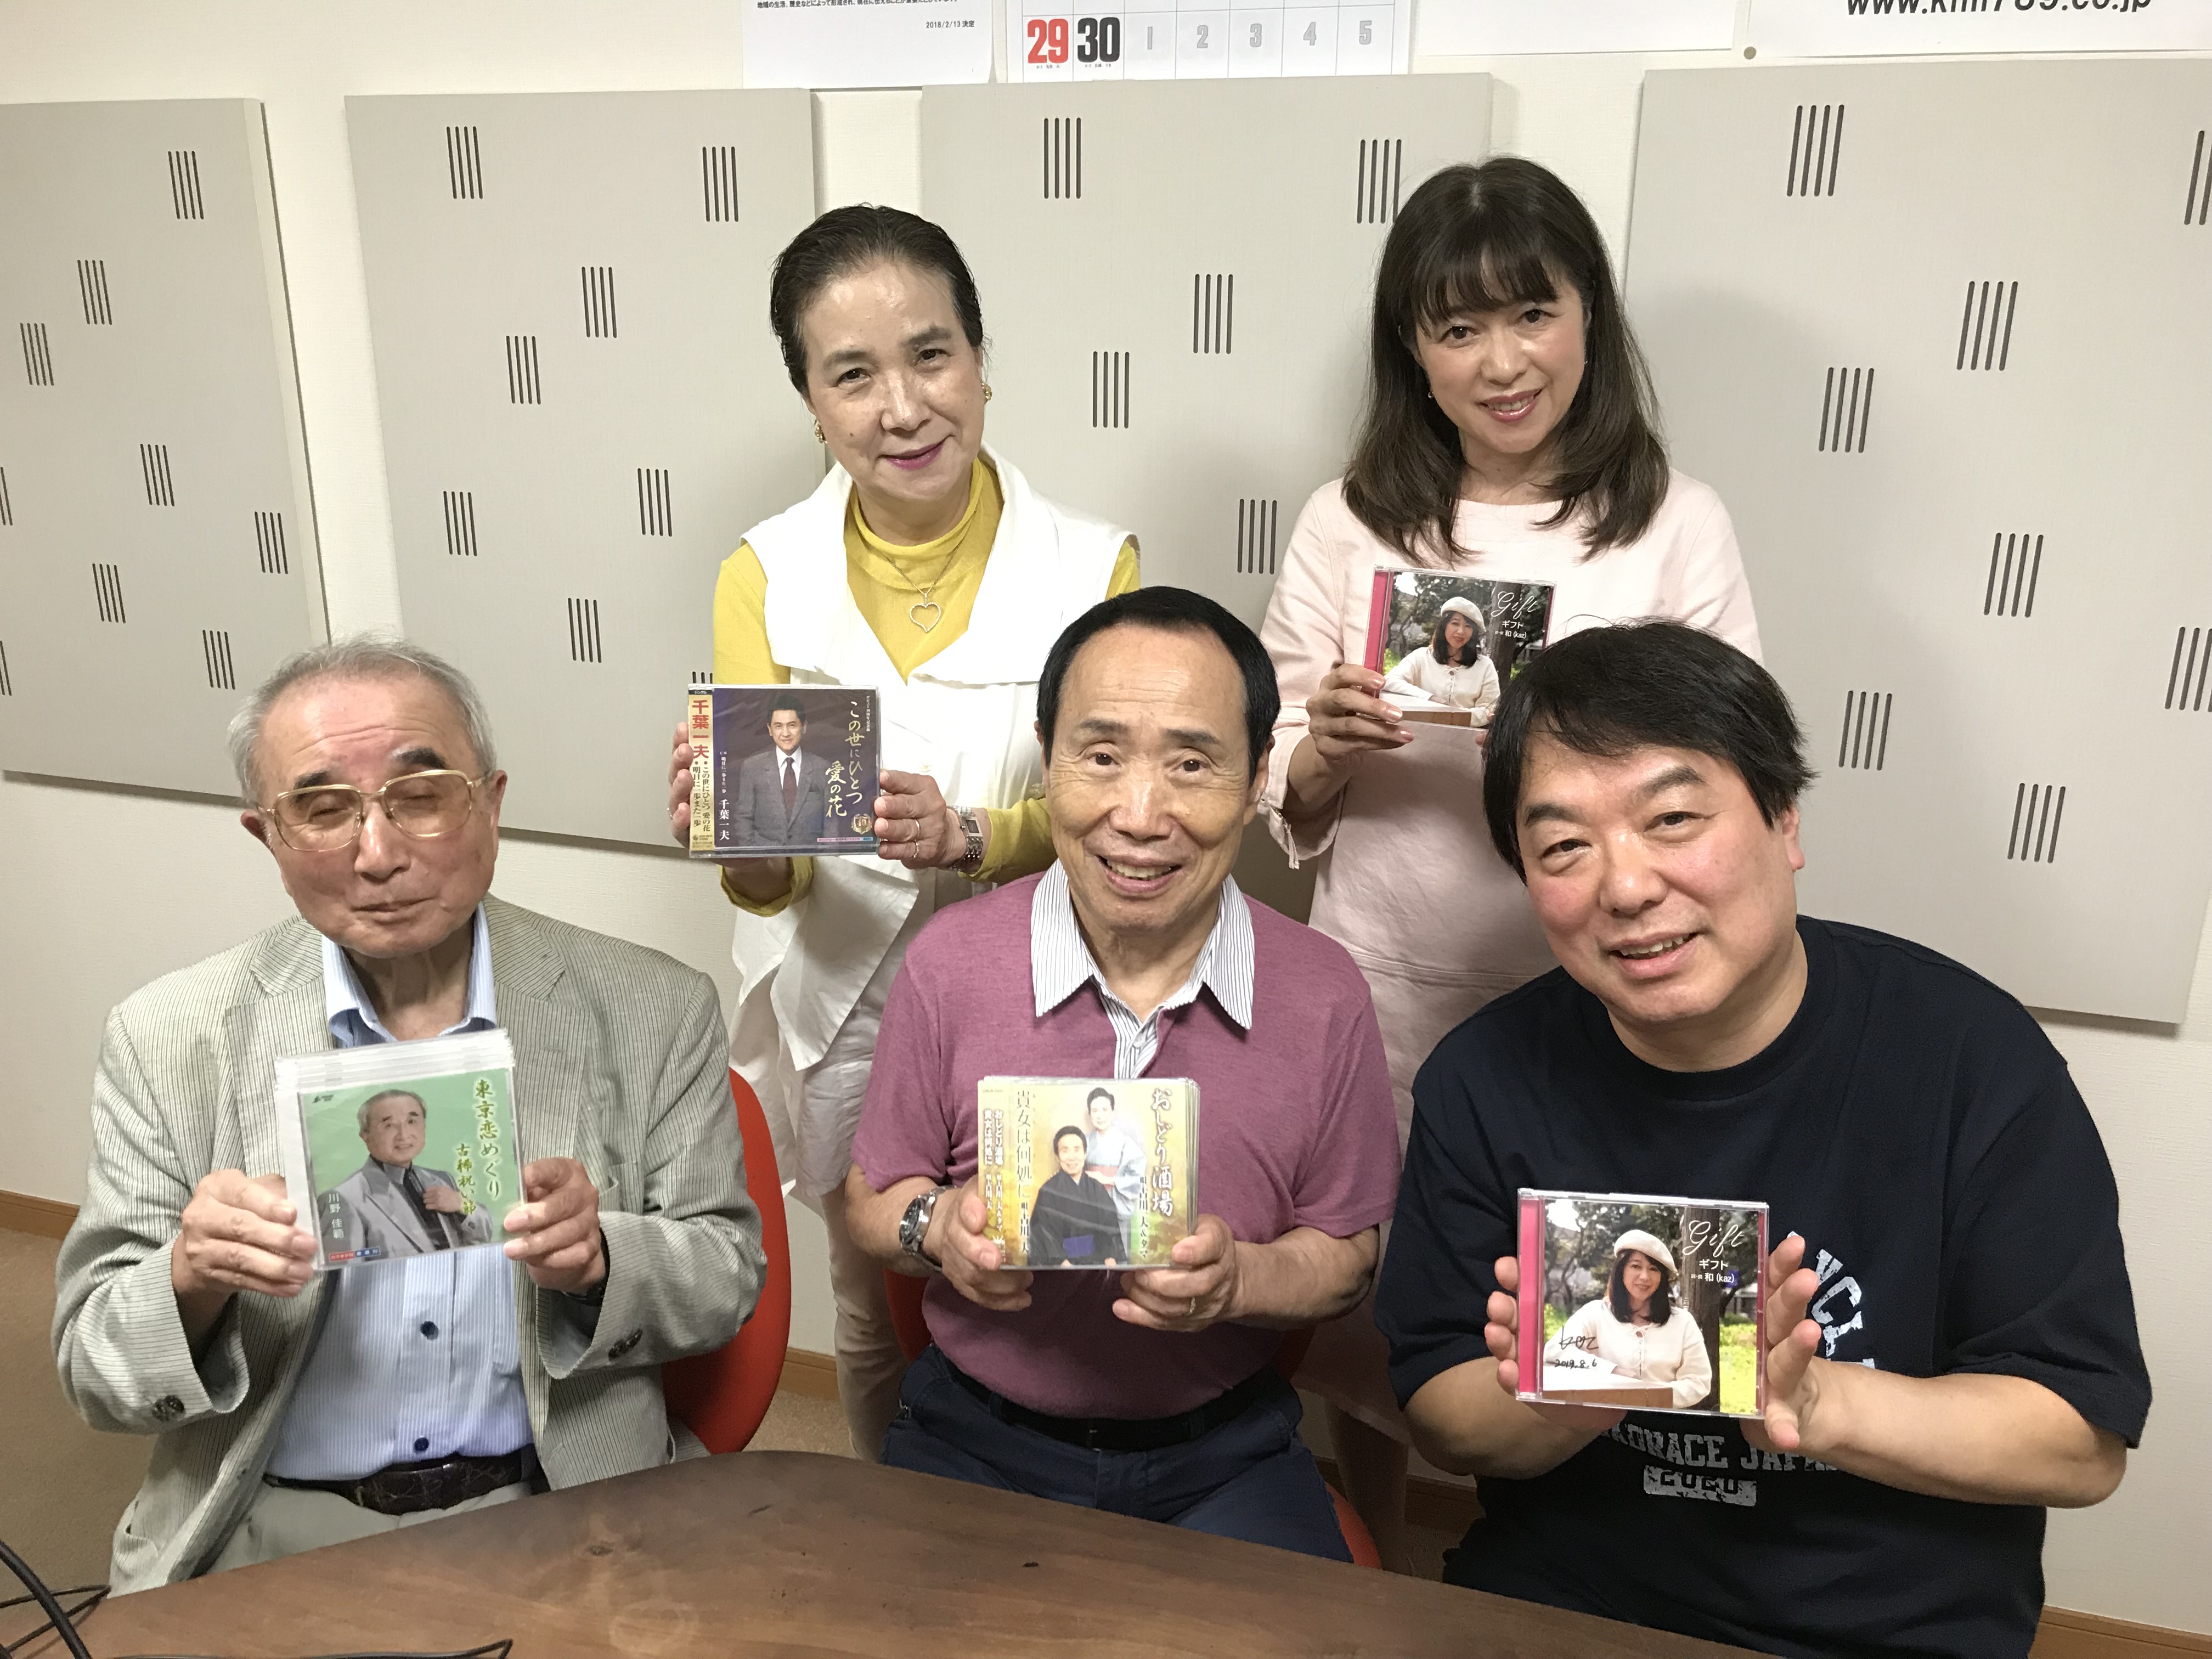 CDプレゼントのお知らせ - かつしかFM 78.9MHz